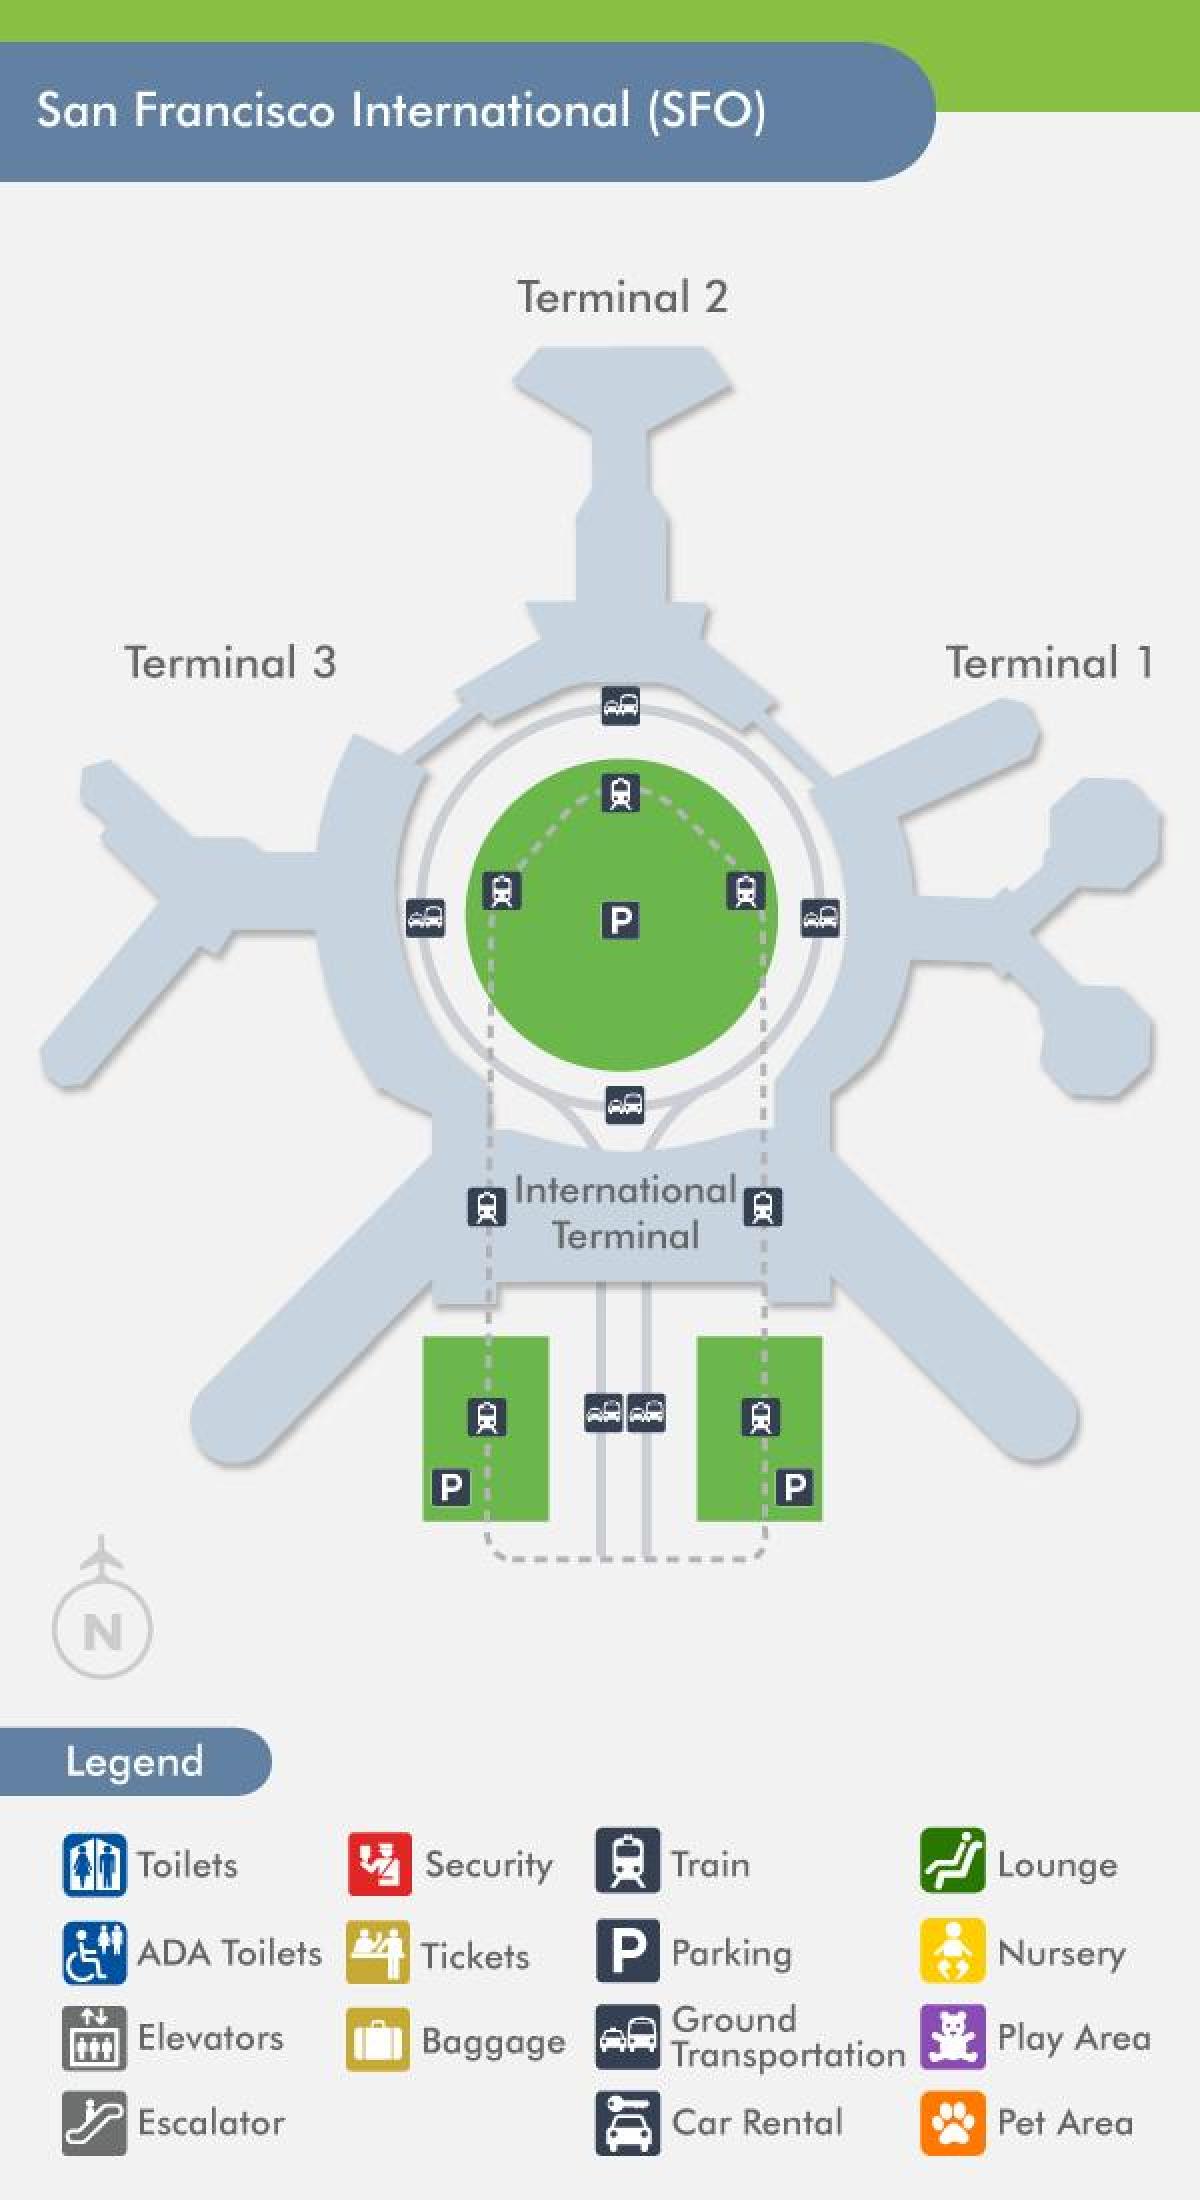 1 SFO haritası havaalanı terminal 